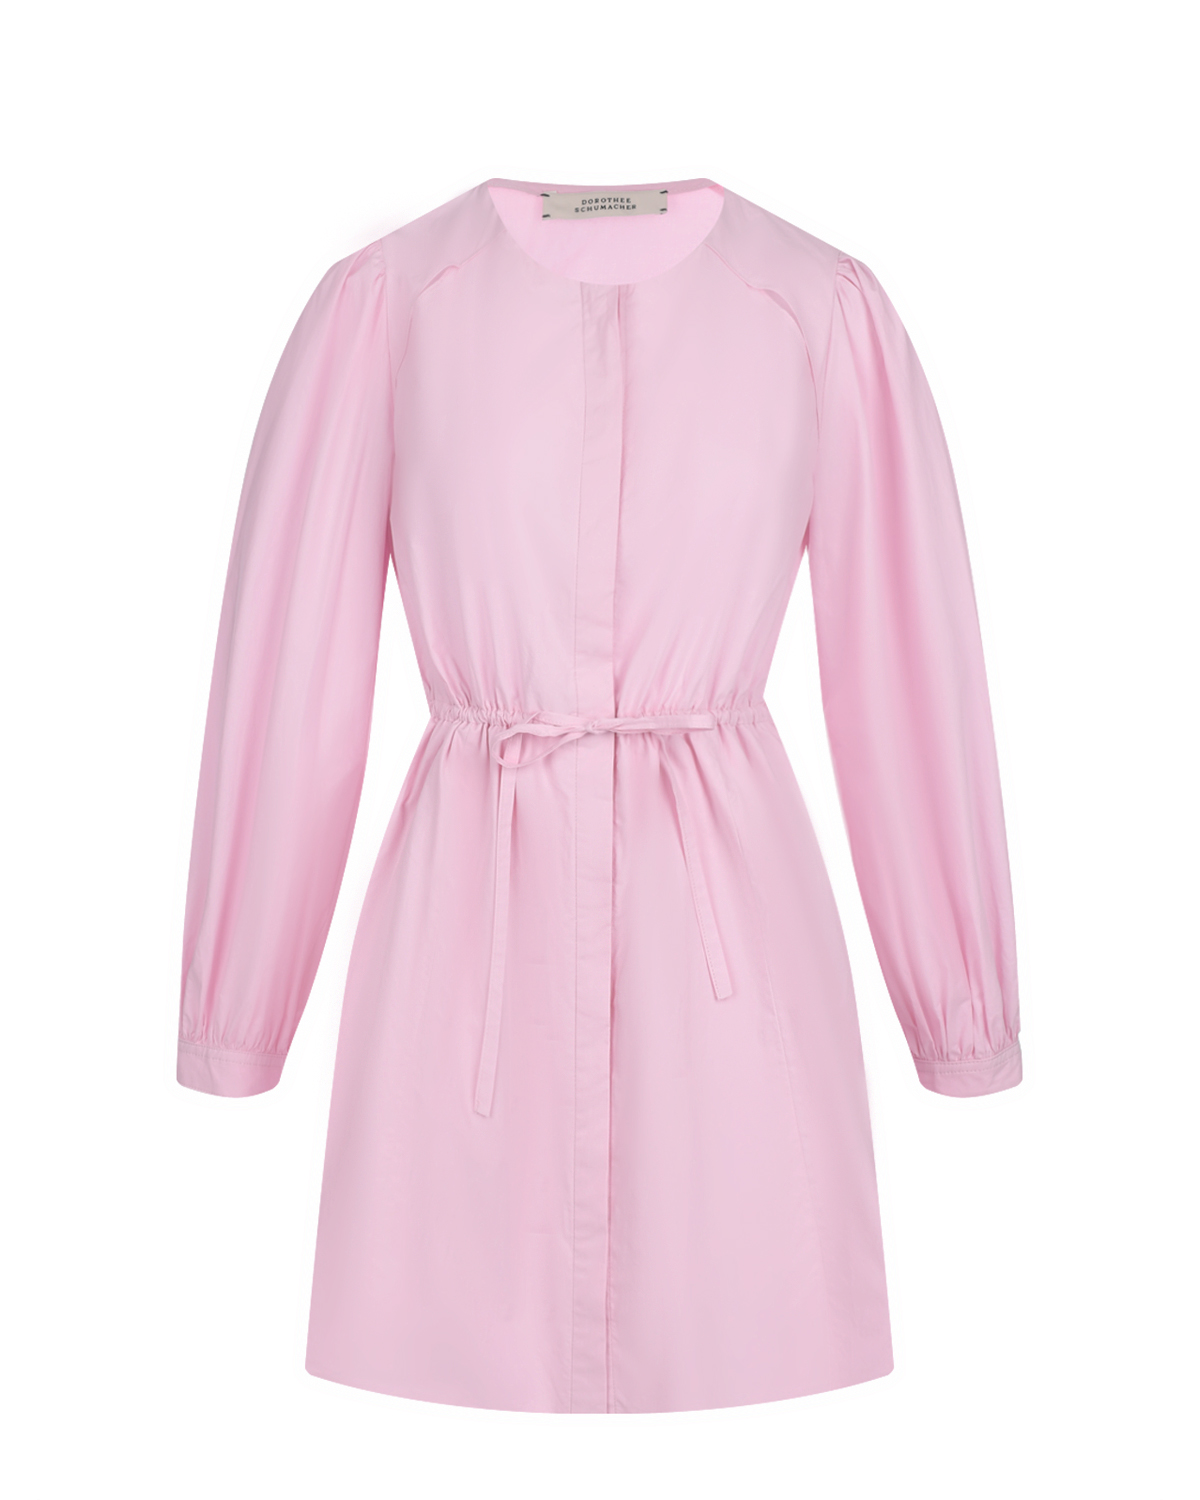 Розовое приталенное платье Dorothee Schumacher платье для собак кулирка xs дс 24 ош 32 36 ог 34 38 розовое с серыми полосками